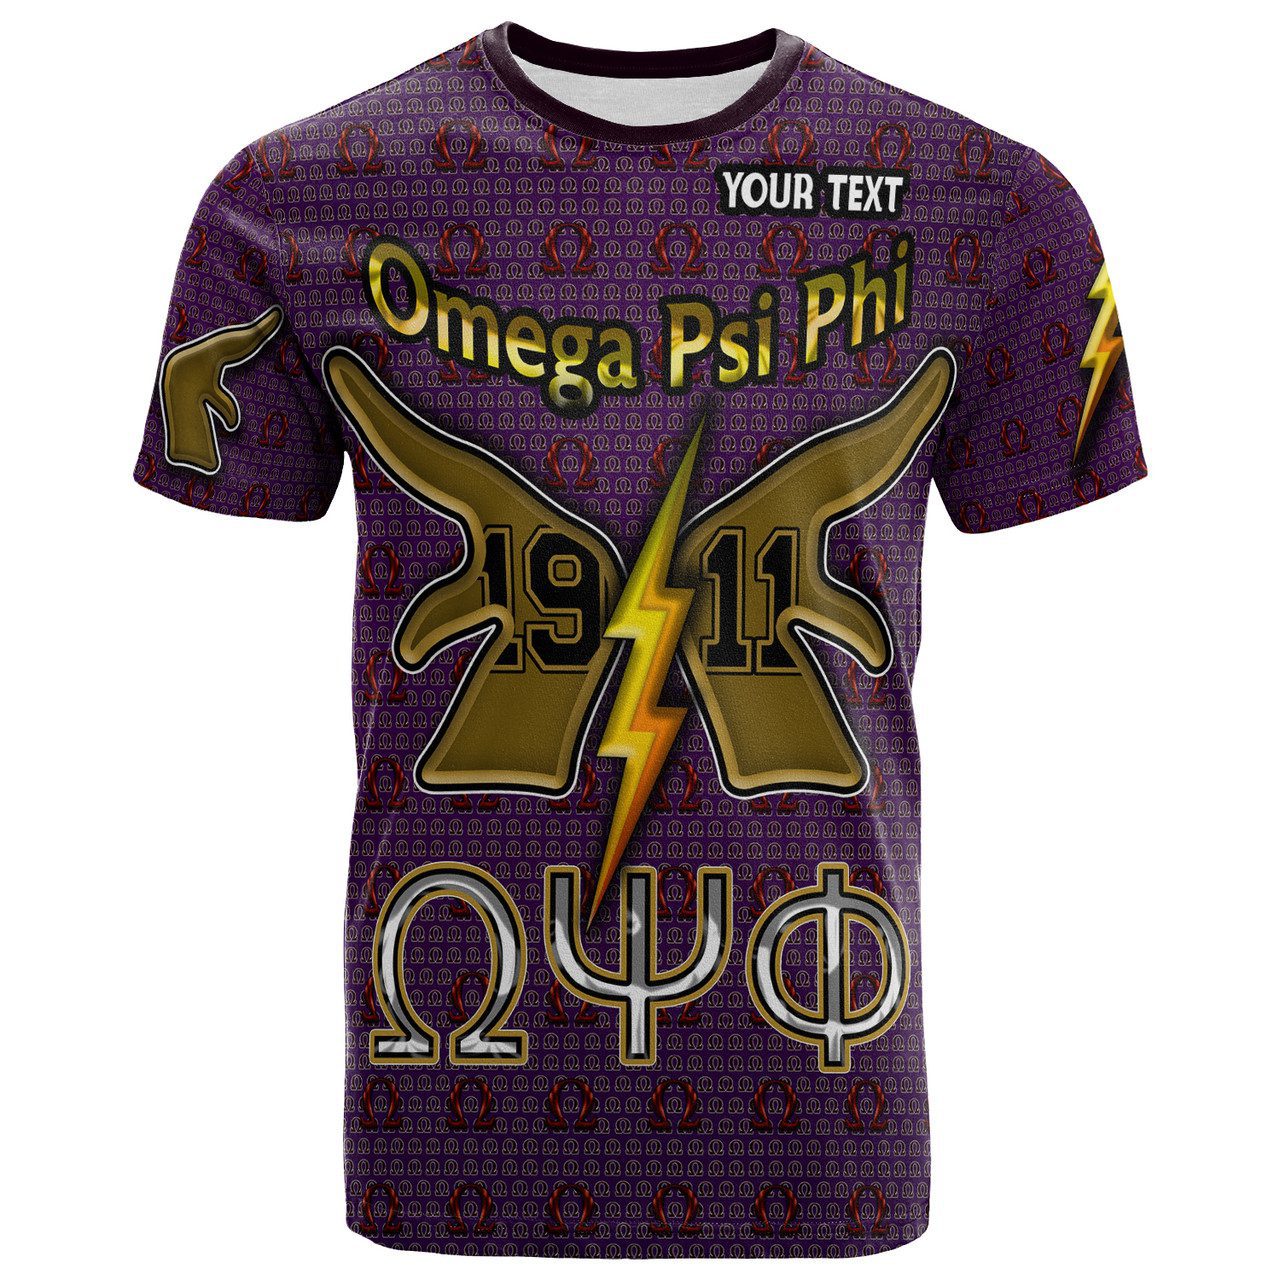 Omega Psi Phi T-Shirt- Custom Omega Psi Phi Hand 1911 T-Shirt